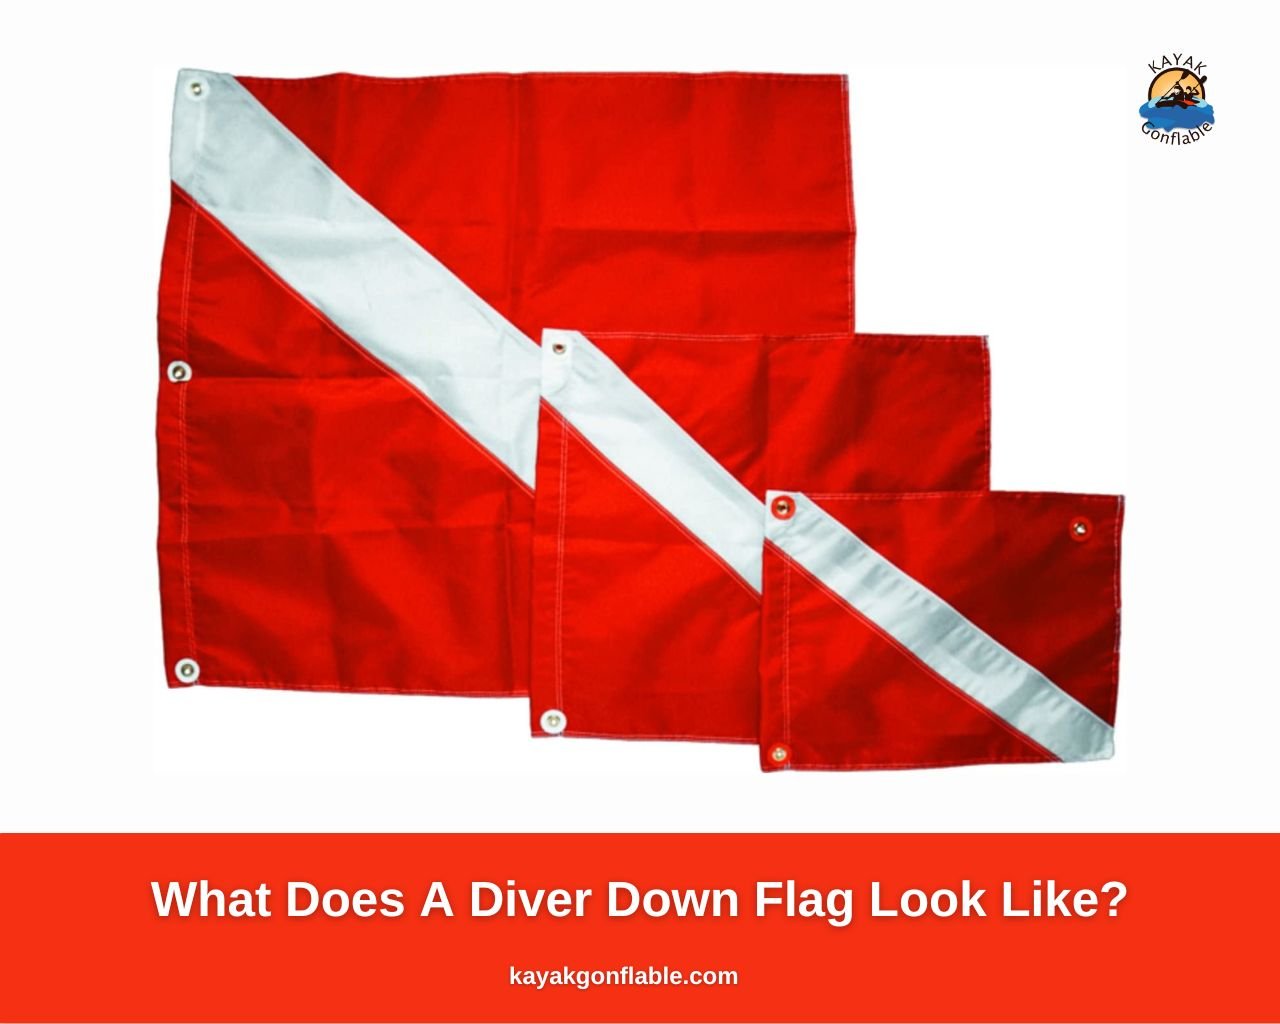 ¿Qué aspecto tiene una bandera de buceador?